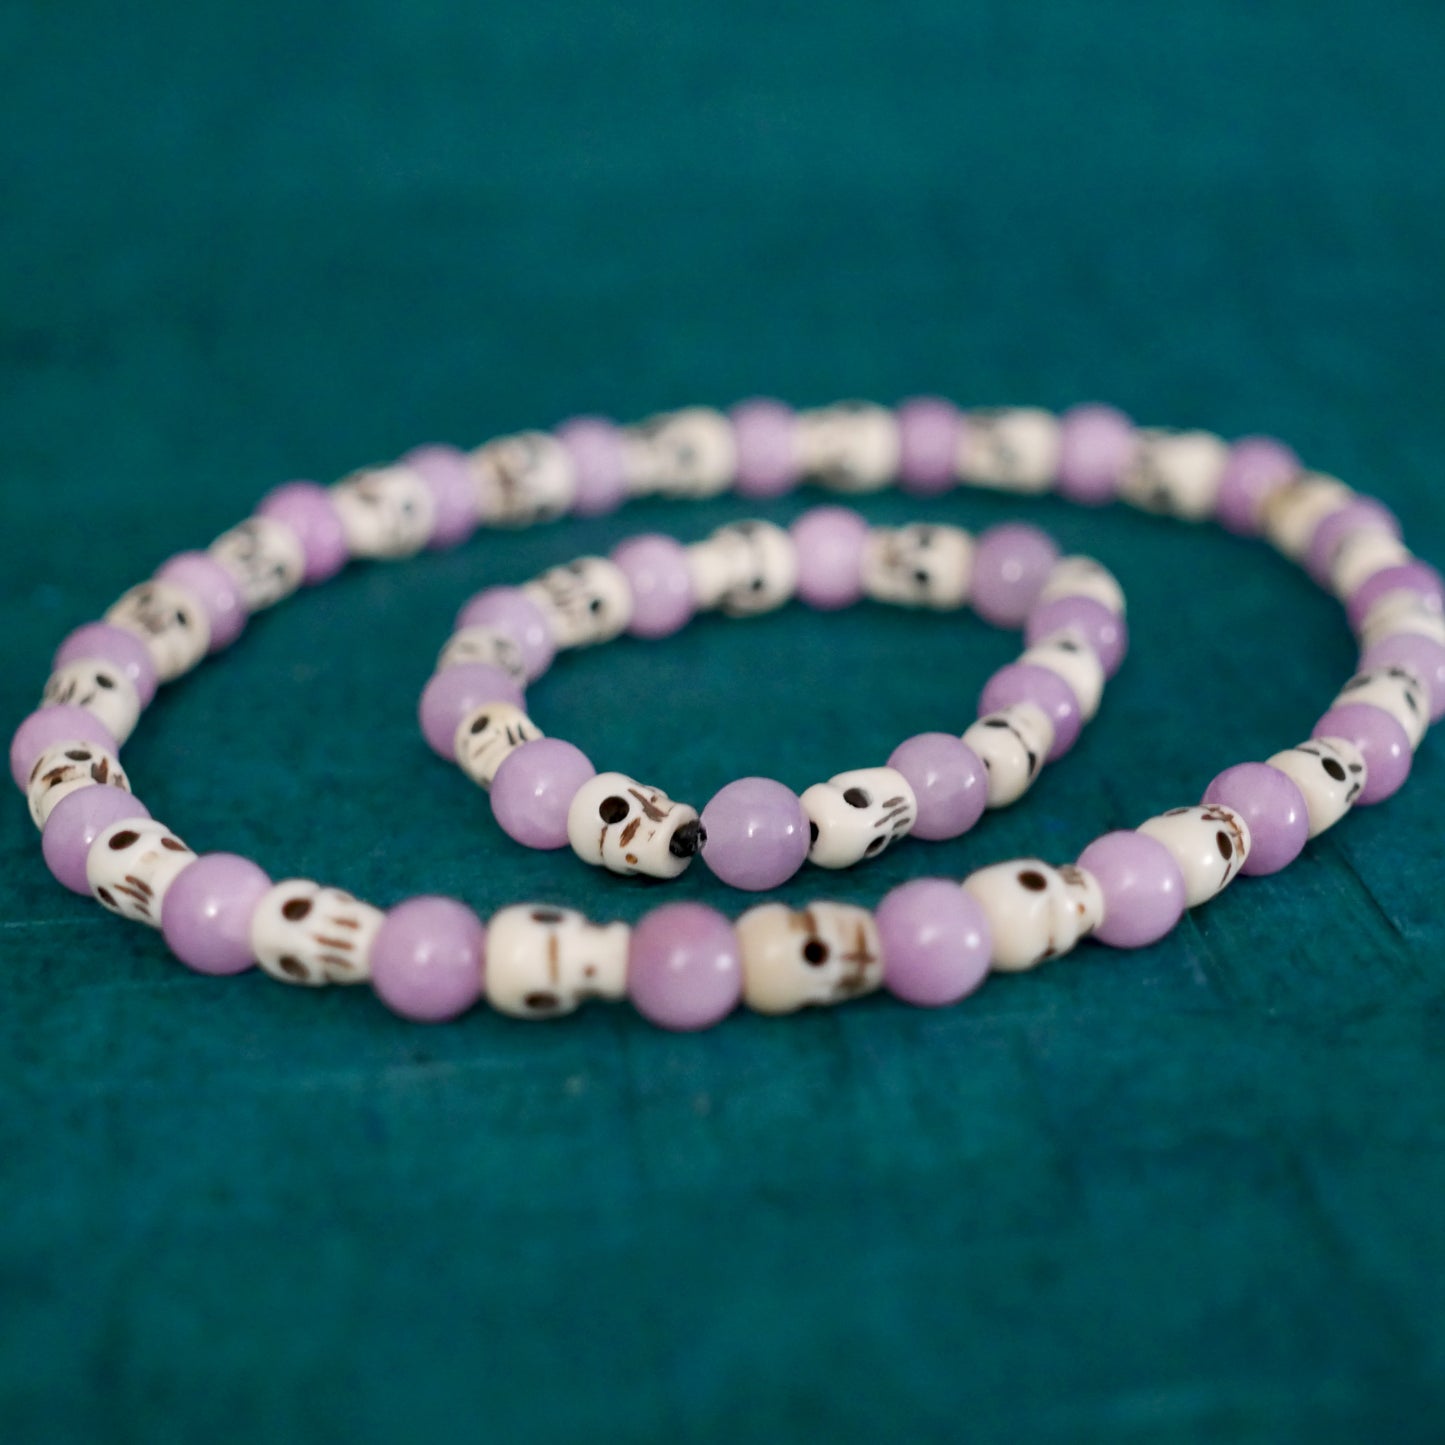 Kali Necklace Bracelet Set Skull Kunzite Beads| Handmade Goddess Jewelry Gift